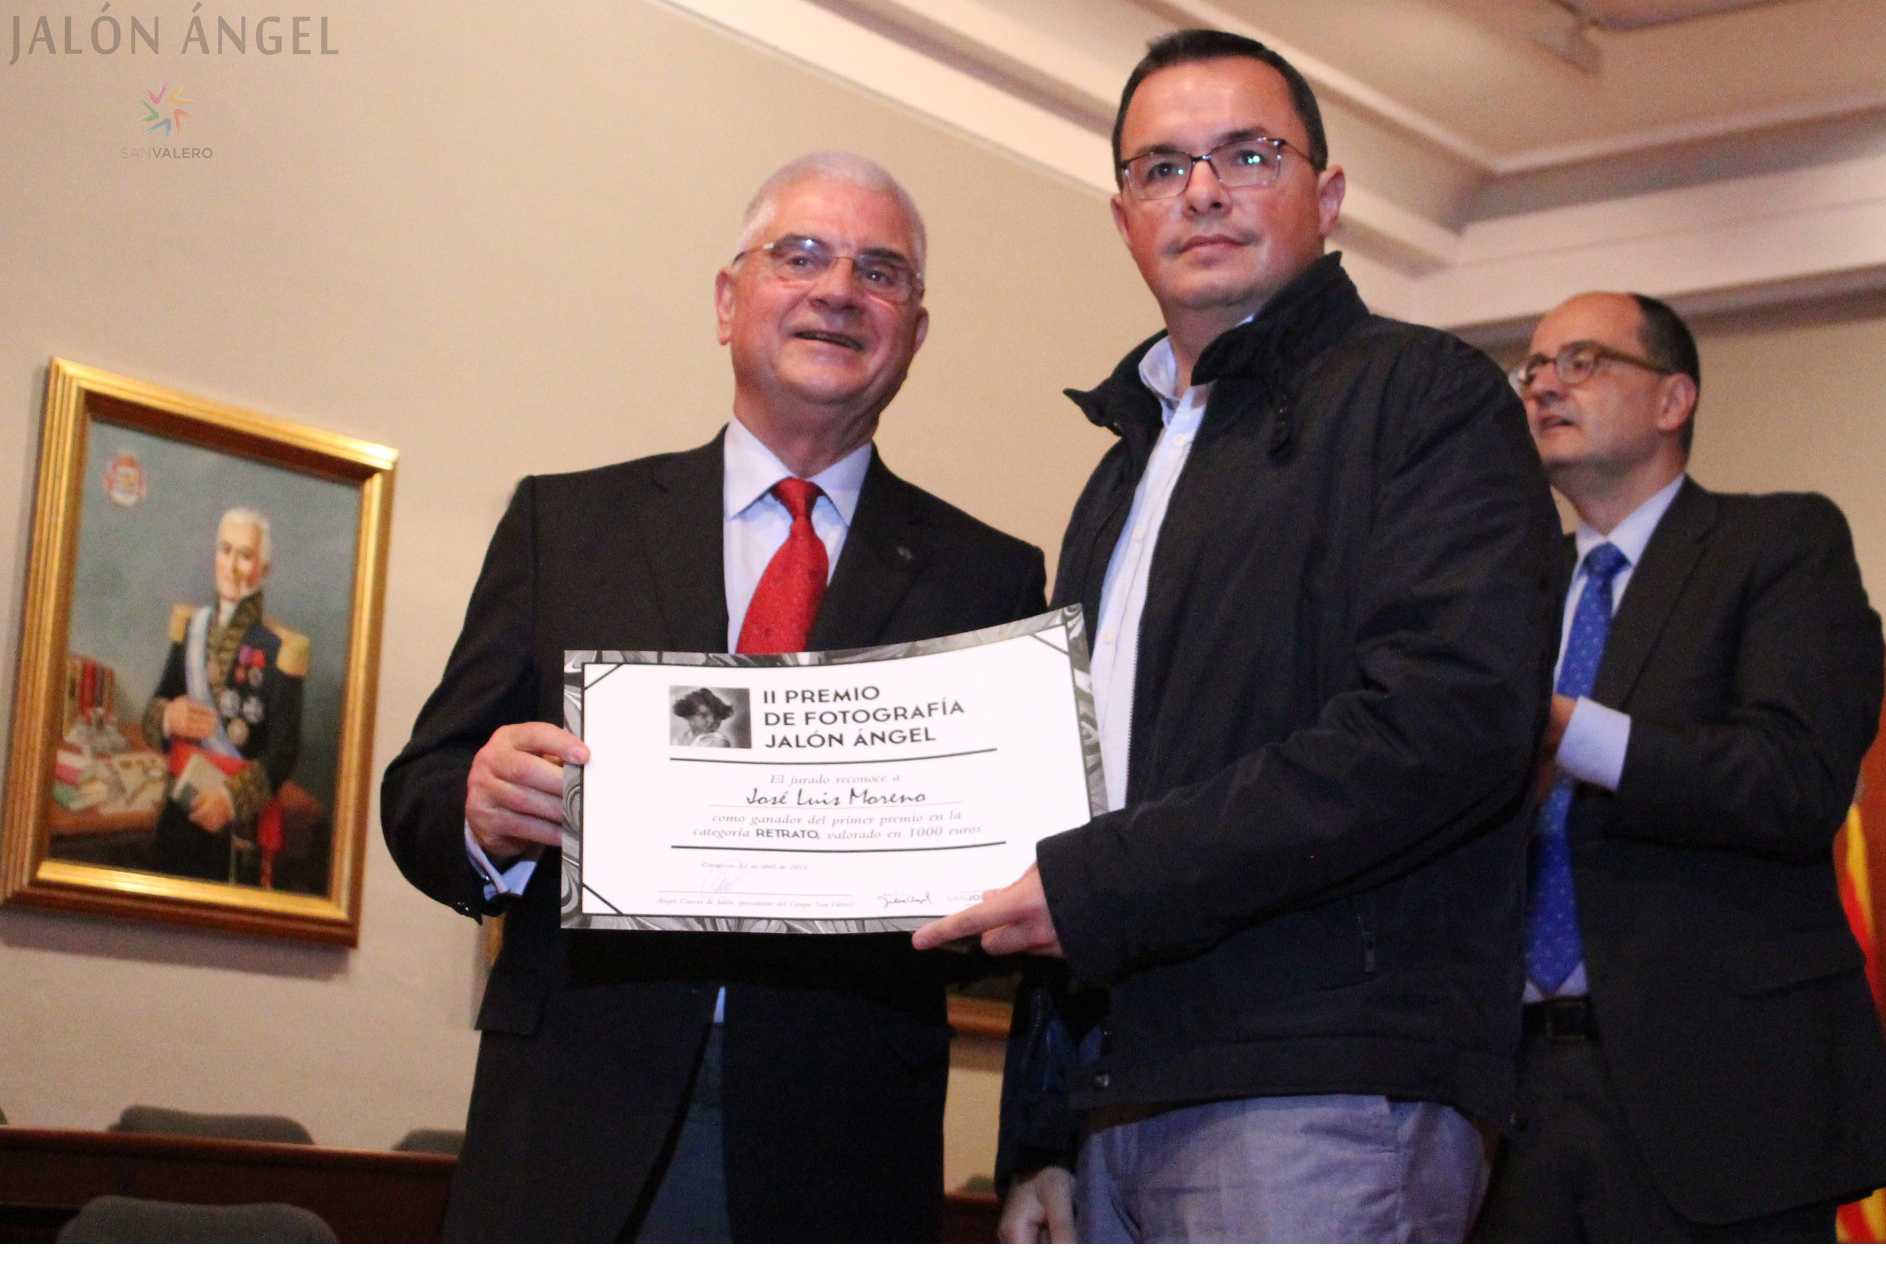 El presidente del Grupo San Valero, Don Ángel García de Jalón Comet, entregando el diploma al ganador de retrato del II Premio de Fotografia Jalón Ángel, José Luis Moreno.